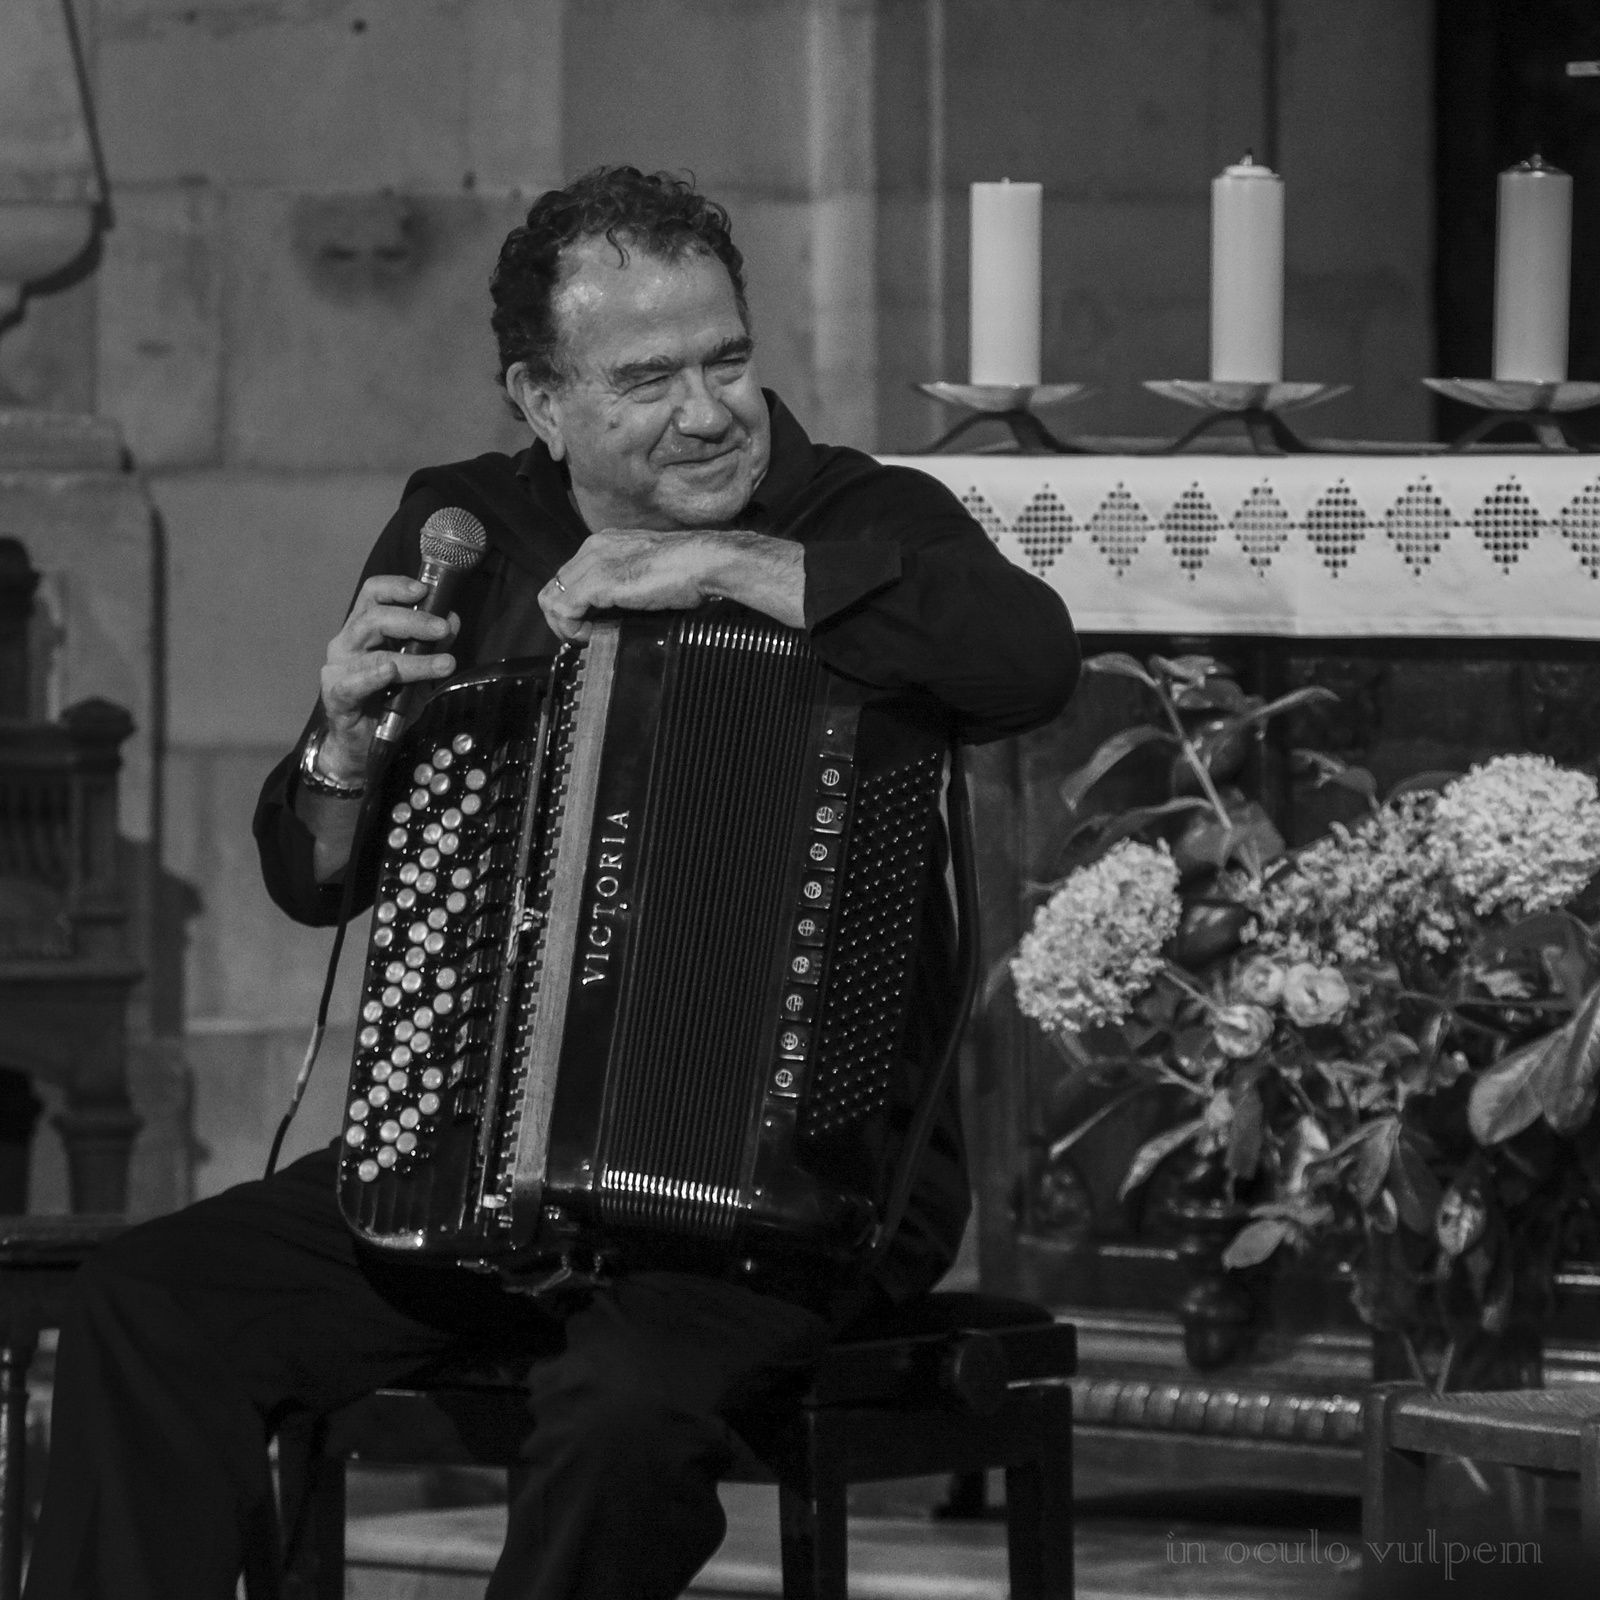 Les Promenades Musicales du Pays d'Auge. Richard Galliano, accordéon. Abbatiale de Saint Pierre sur Dives, 24/07/2019.